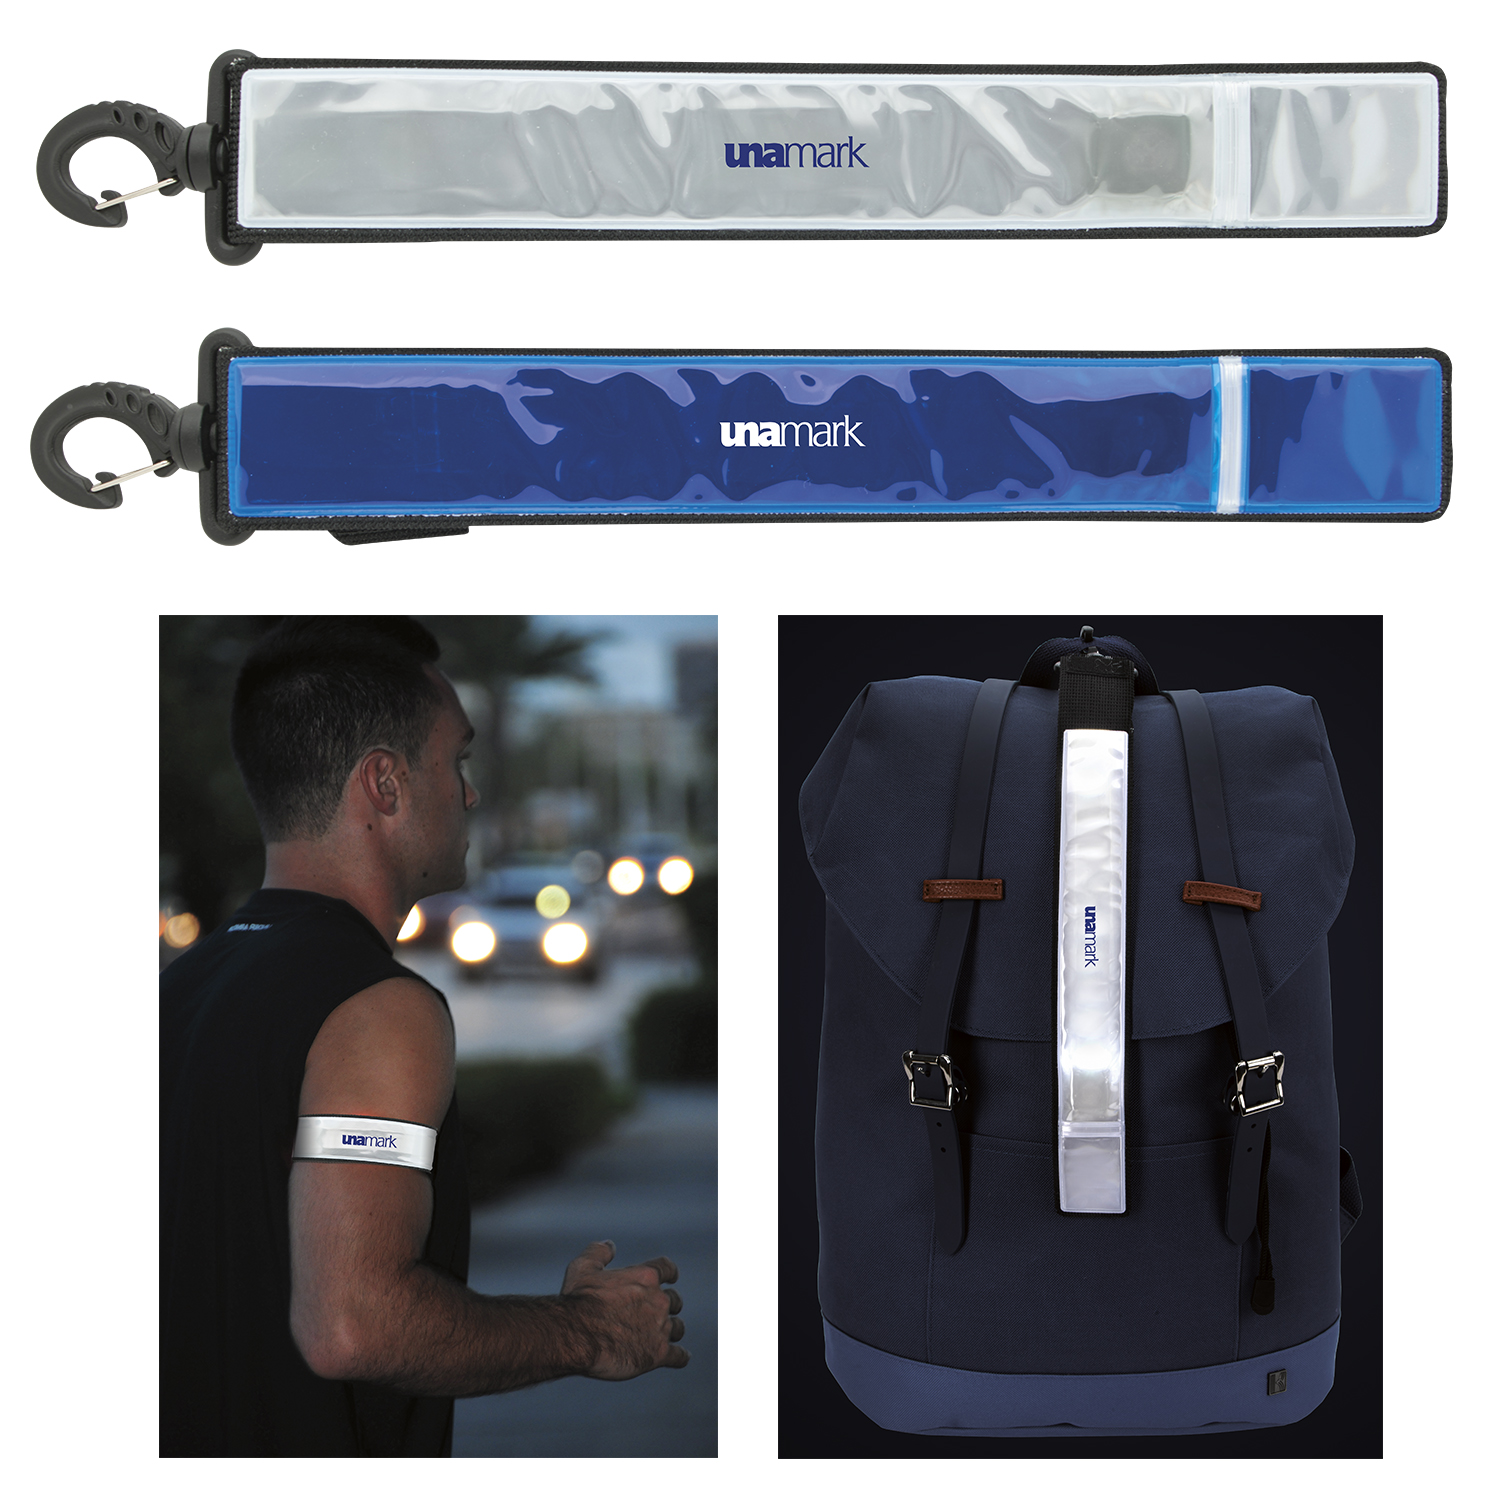 Reflective LED Armband and Bag Tag